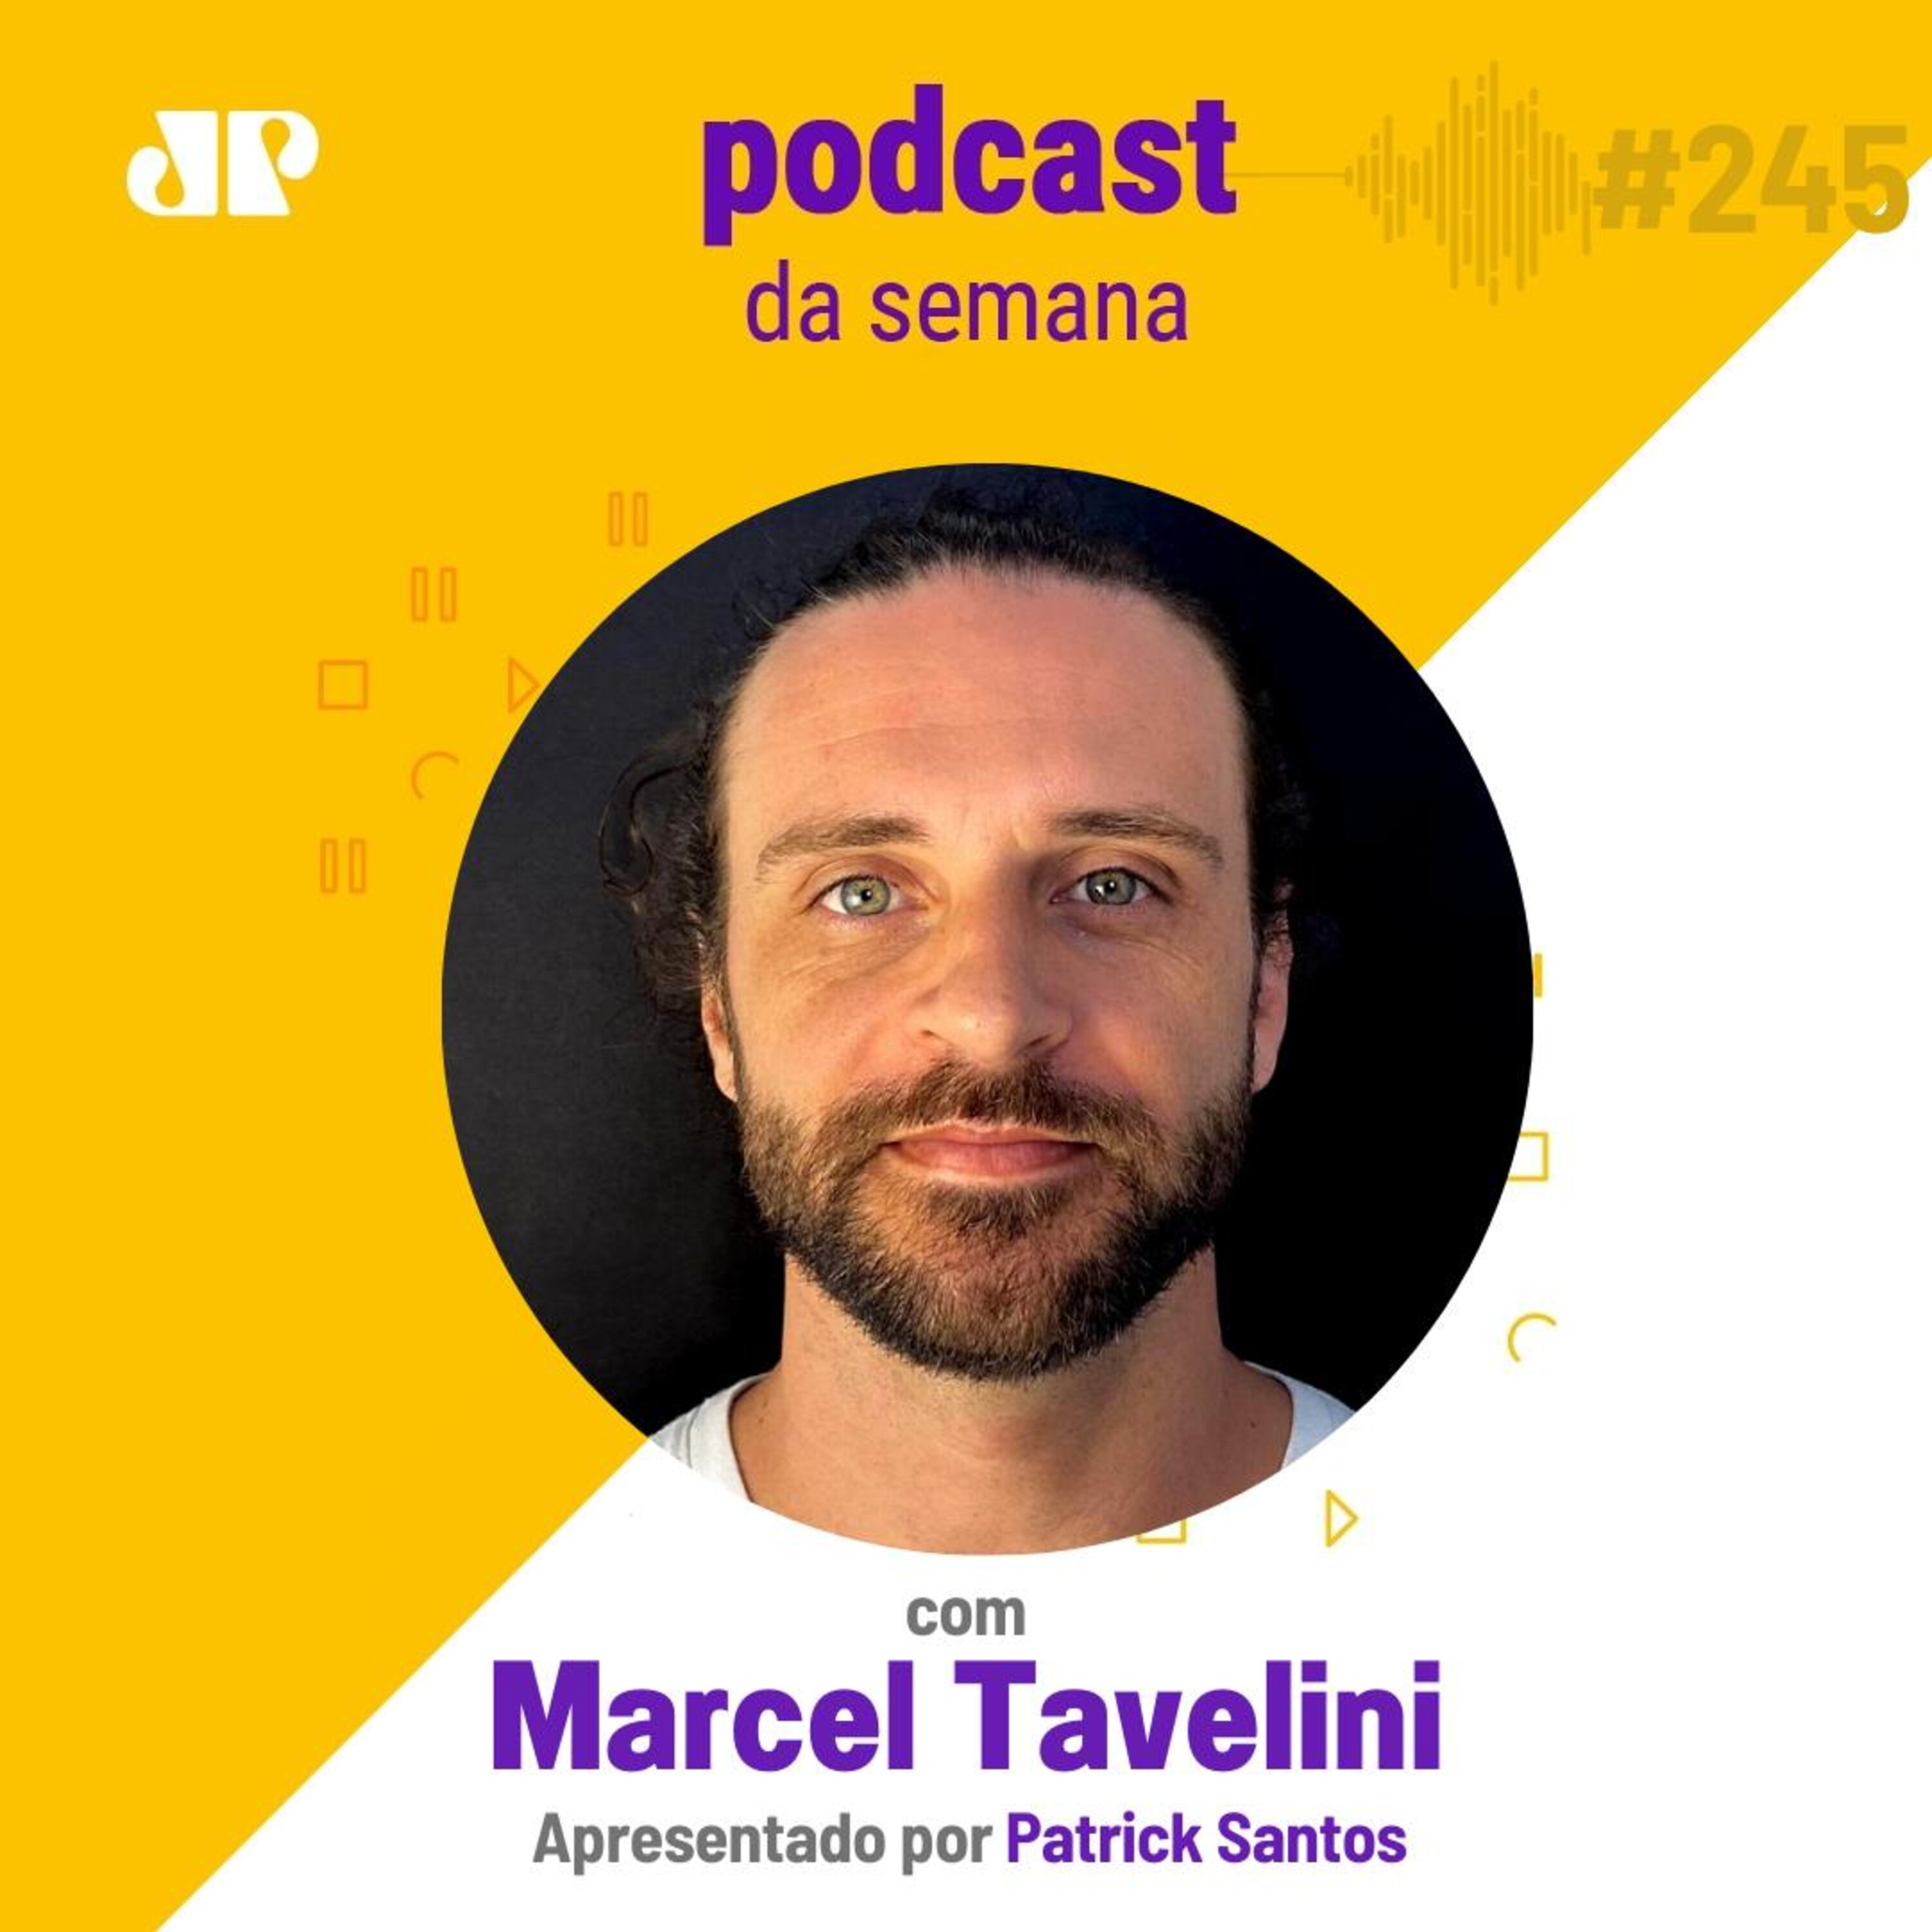 Marcel Tavelini - "A vida é feita de contrastes"